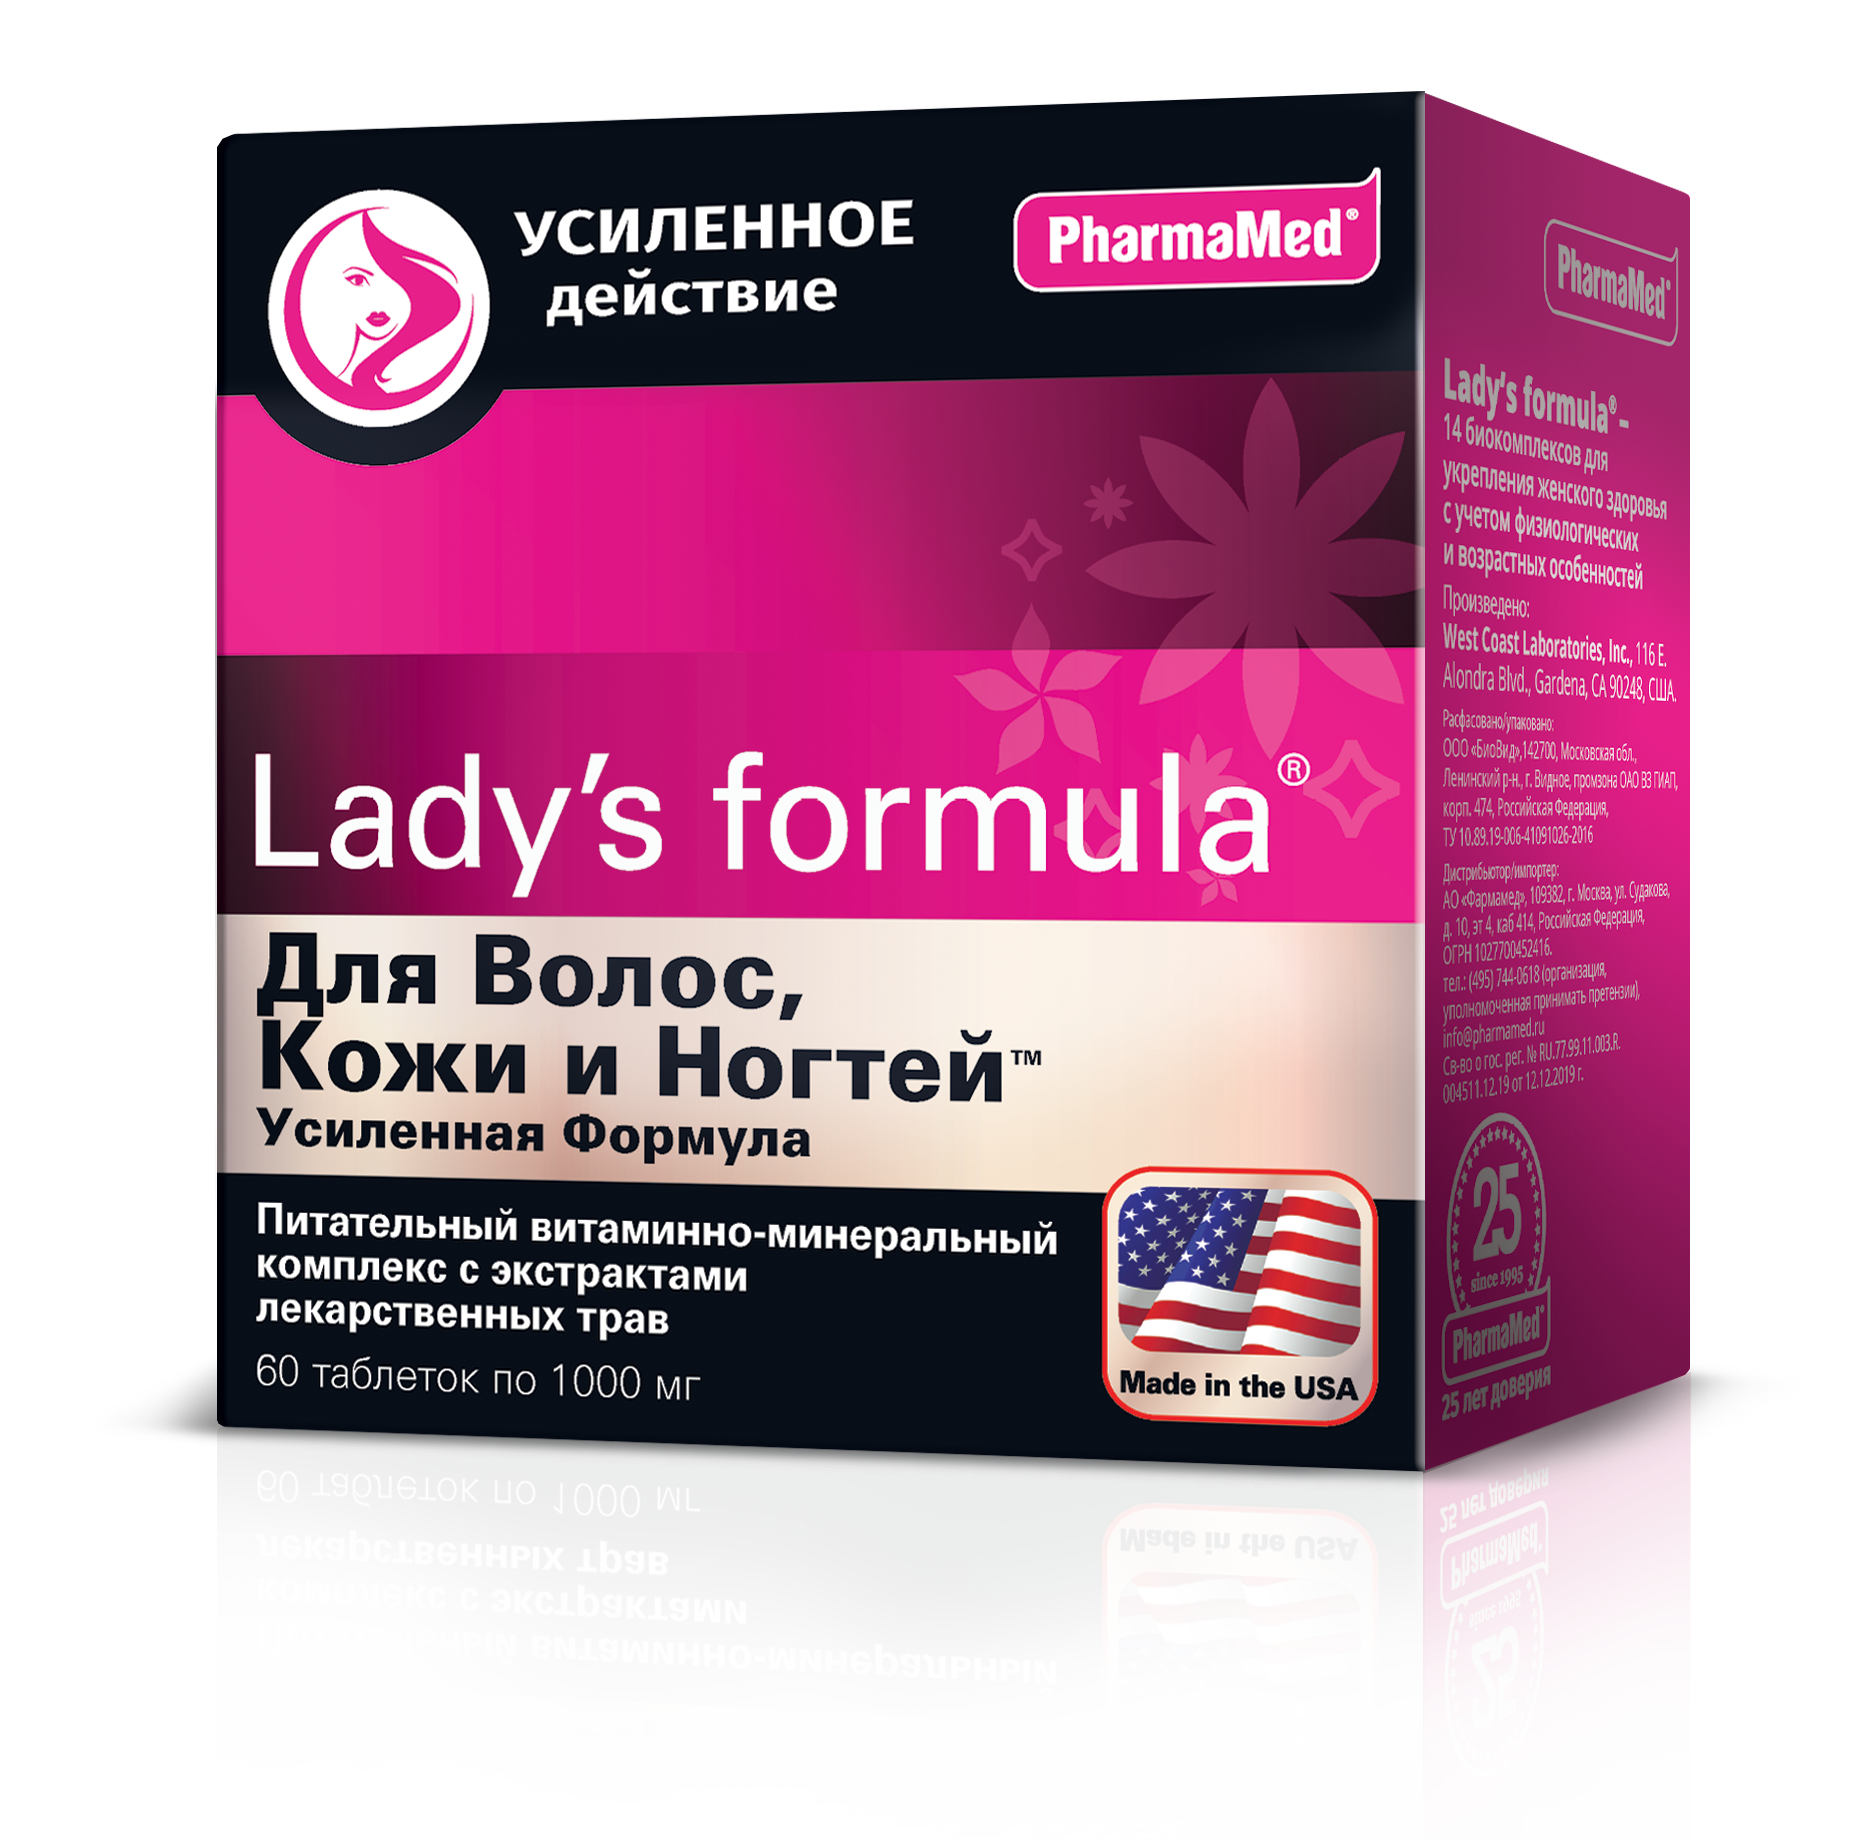 Lady's formula Для волос, кожи и ногтей Усиленная формула, таблетки 1000 мг, 60 шт. prosept средство усиленного действия bath extra для удаления ржавчины и минеральных отложений 1000